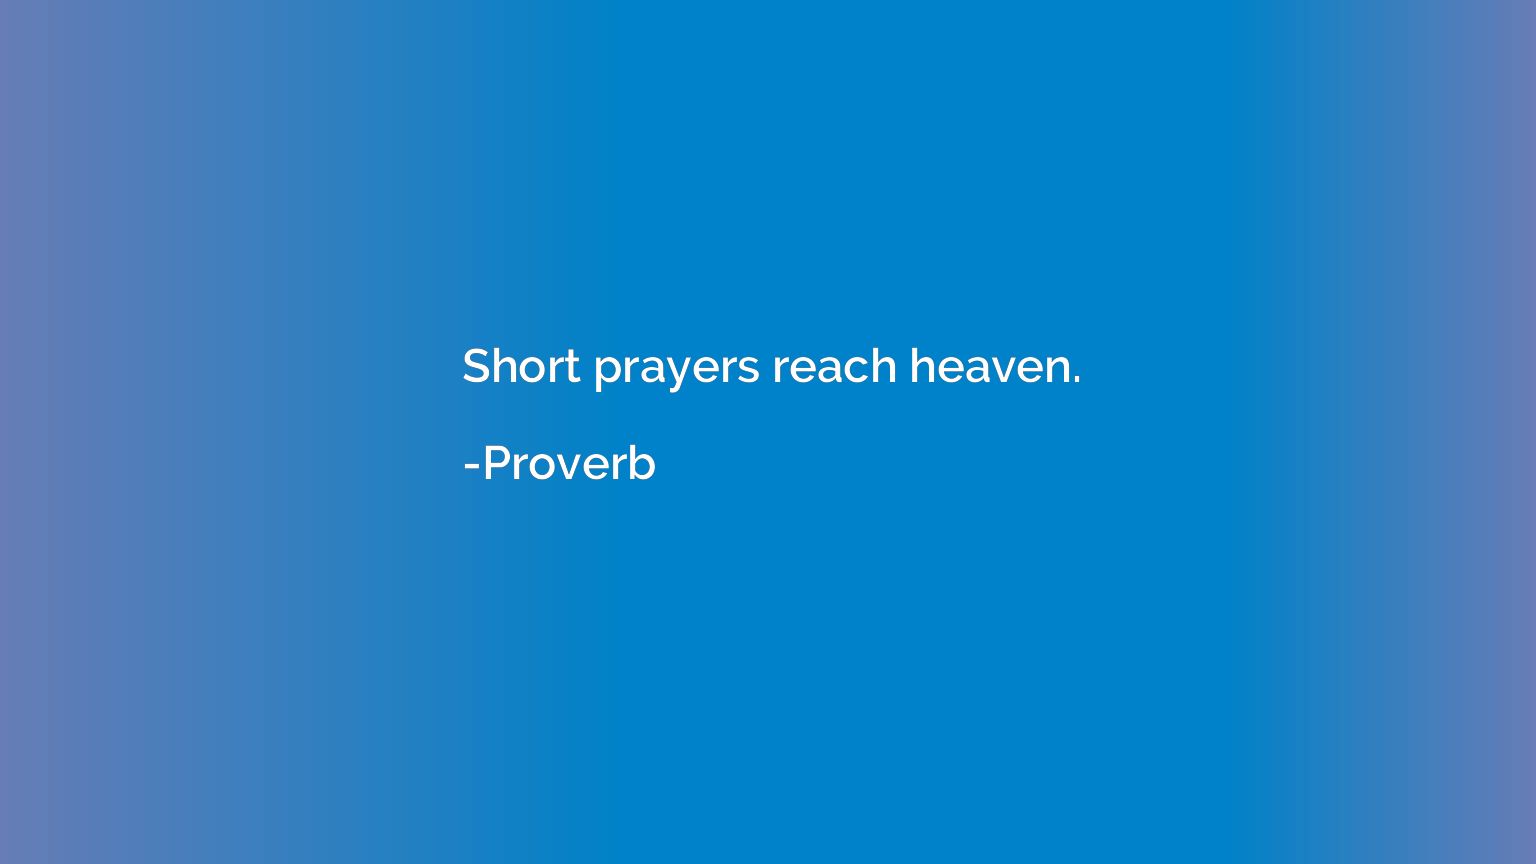 Short prayers reach heaven.